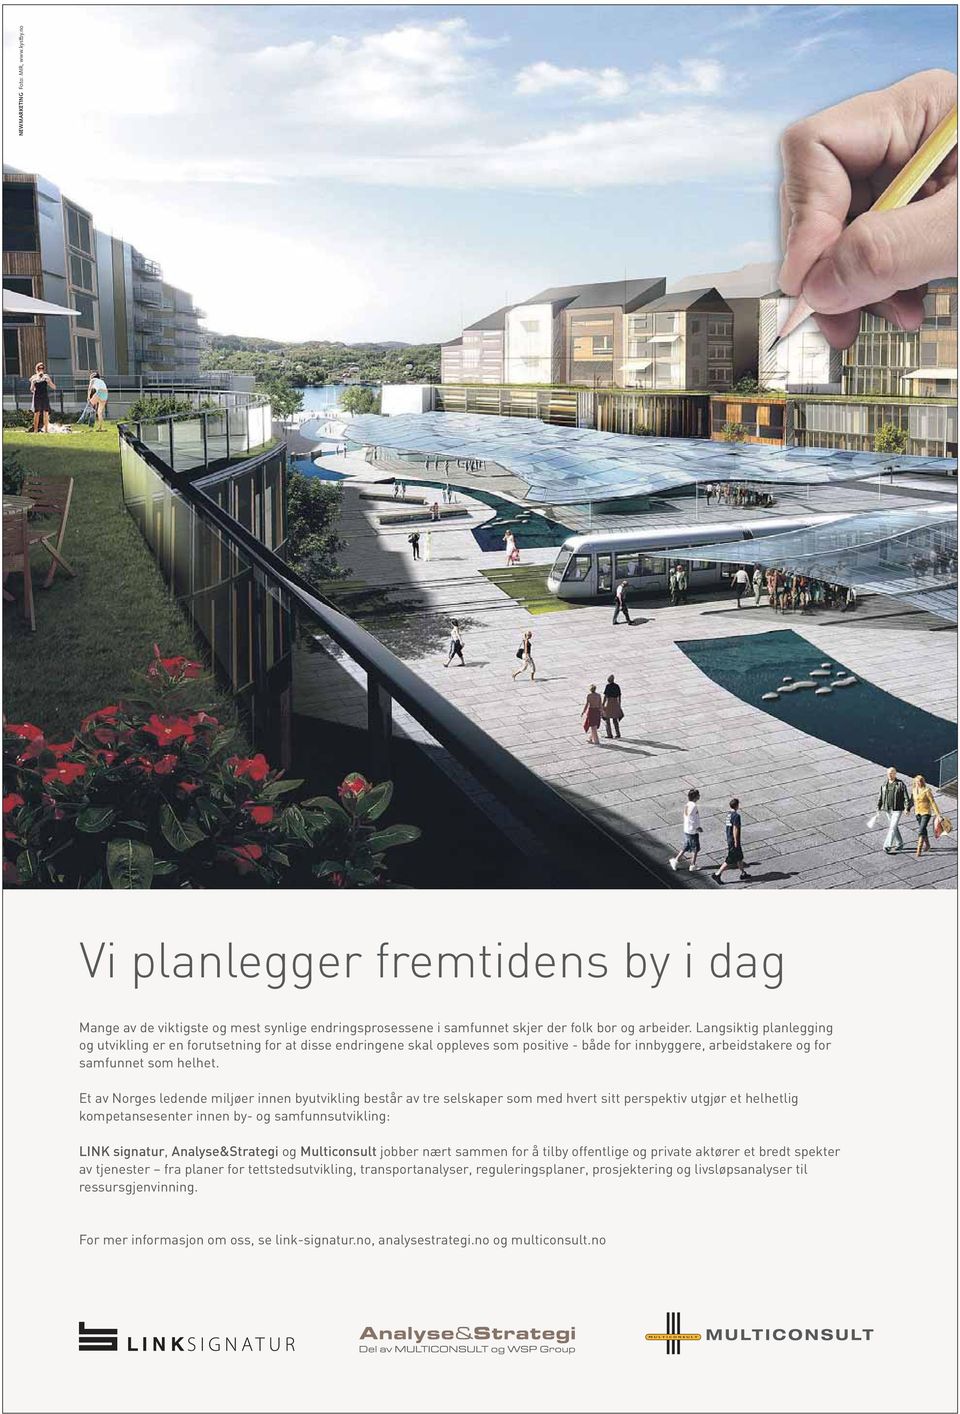 Et av Norges ledende miljøer innen byutvikling består av tre selskaper som med hvert sitt perspektiv utgjør et helhetlig kompetansesenter innen by- og samfunnsutvikling: LINK signatur,